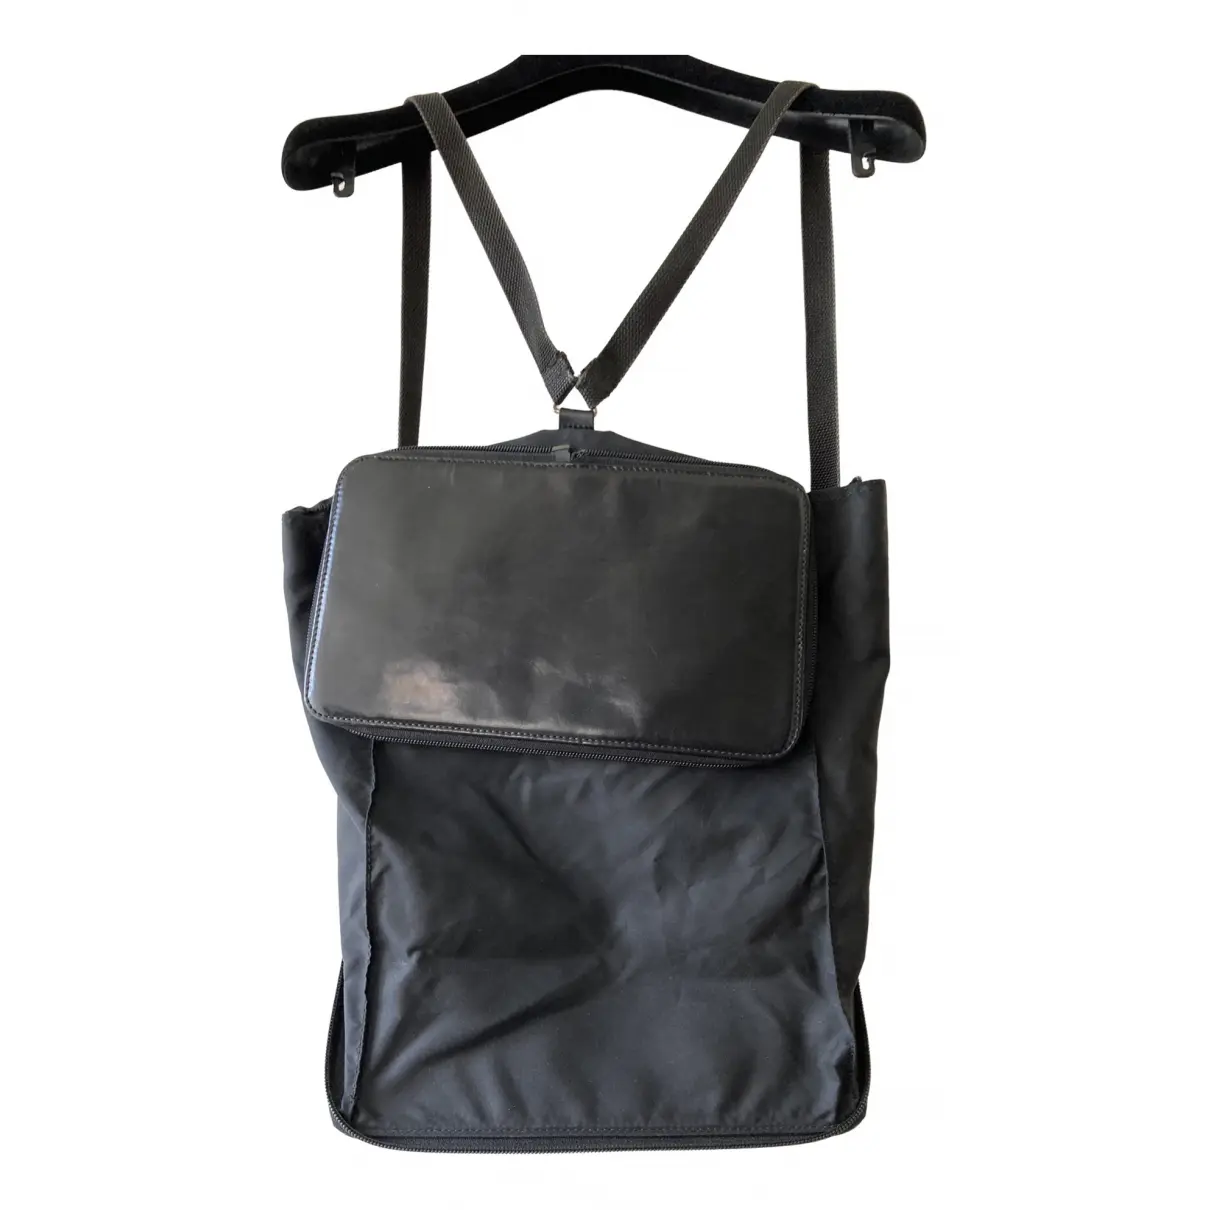 Leather backpack Issey Miyake - Vintage